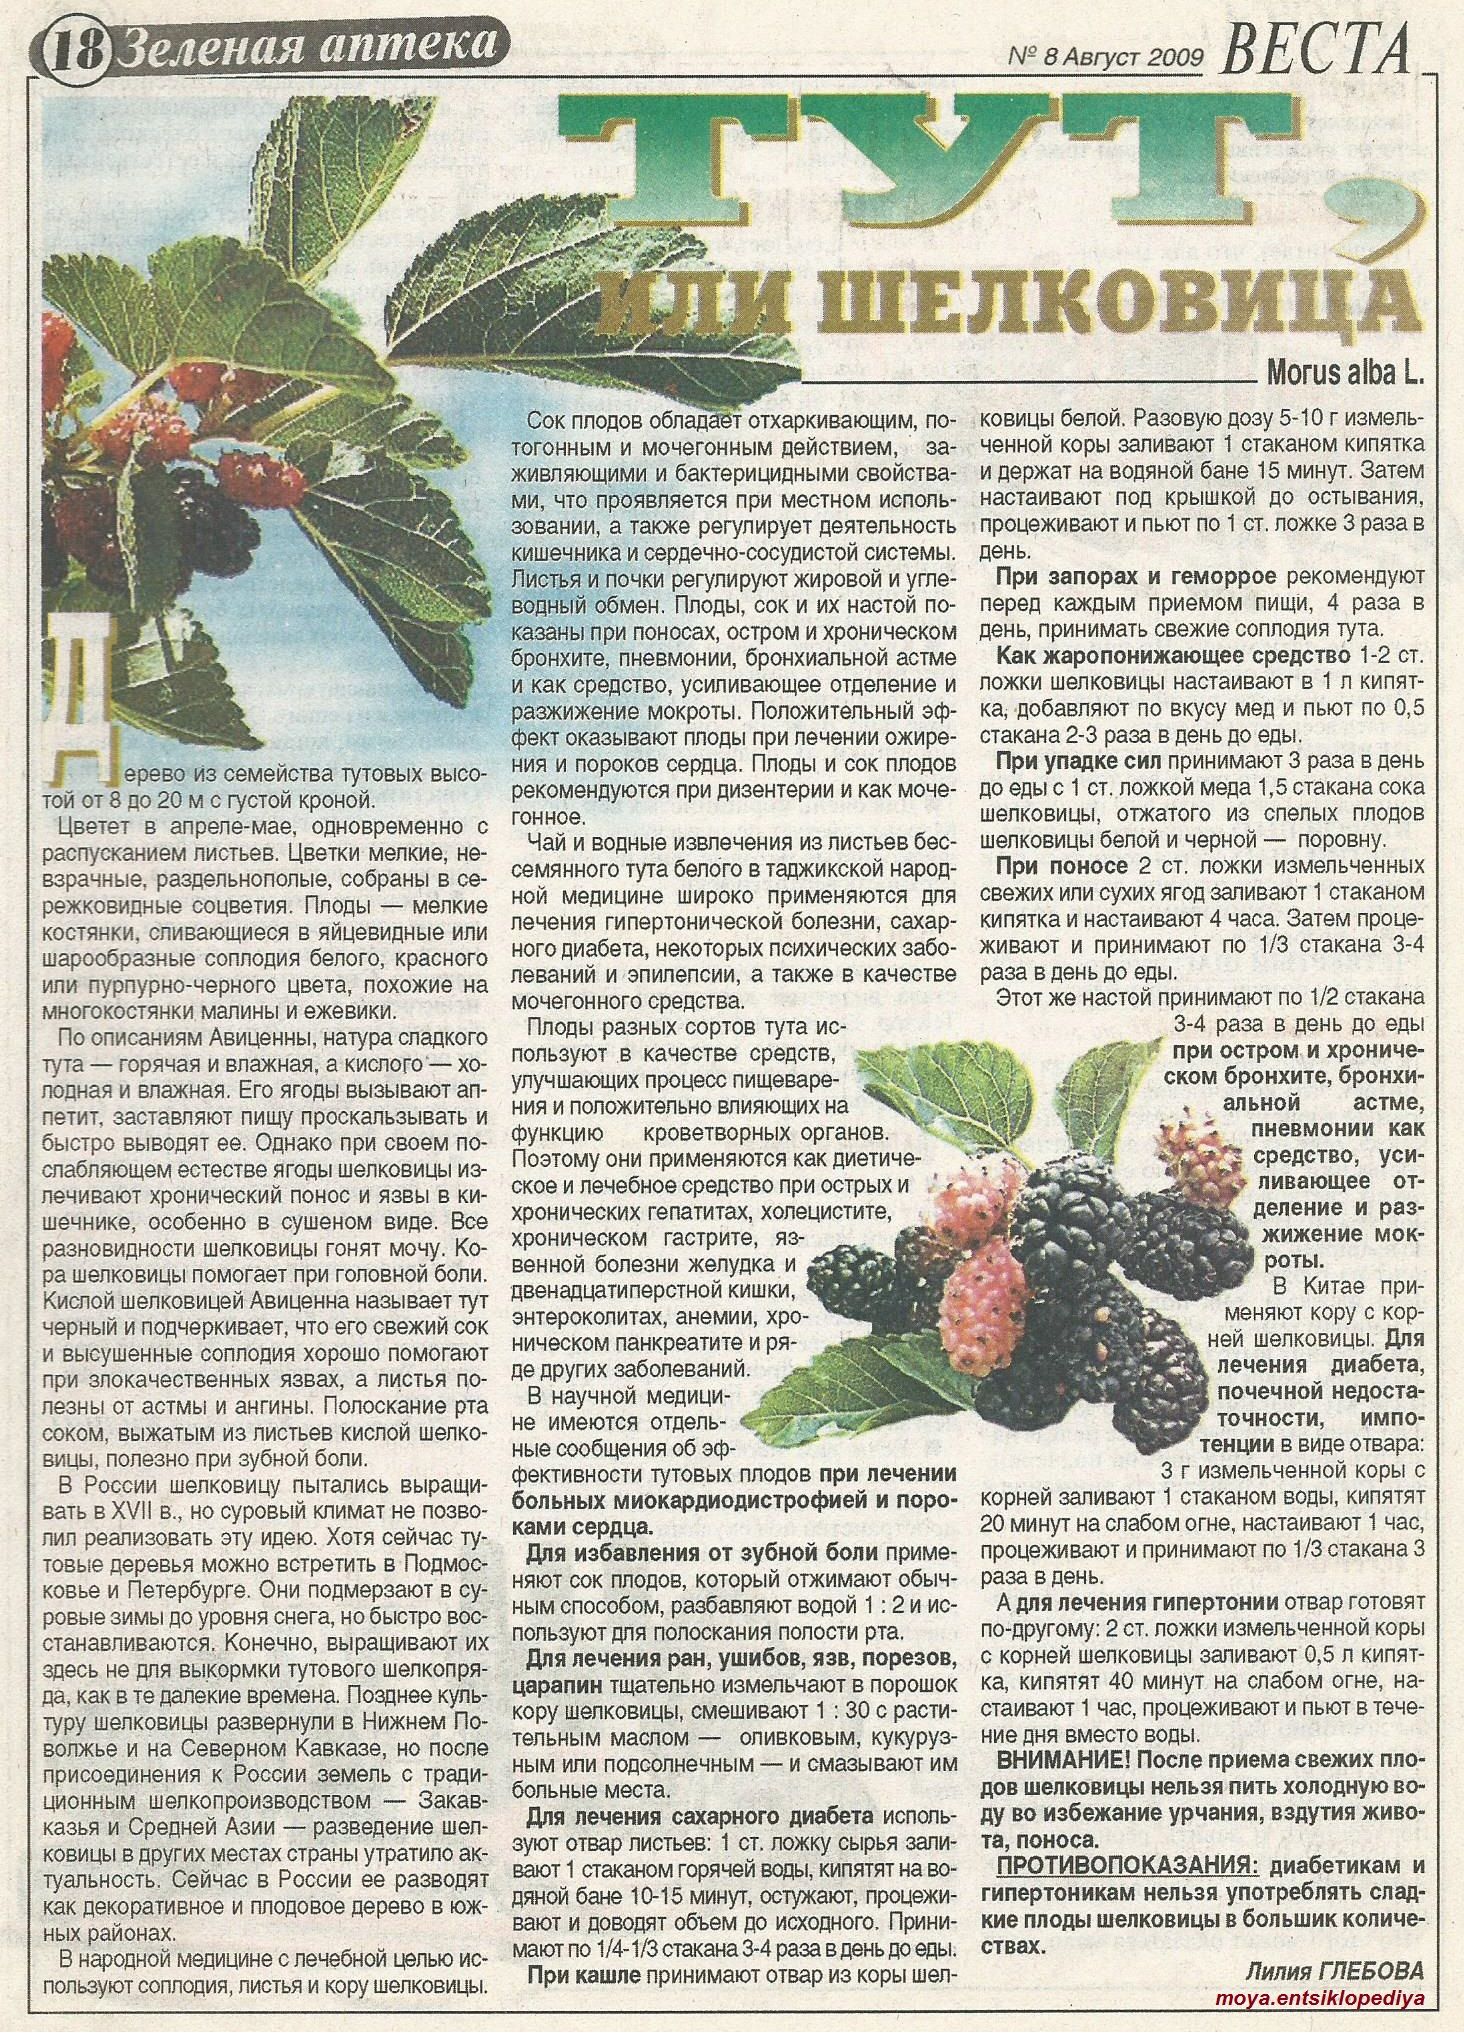 Полезные свойства шелковицы: состав ягод, их польза и вред для организма, противопоказания